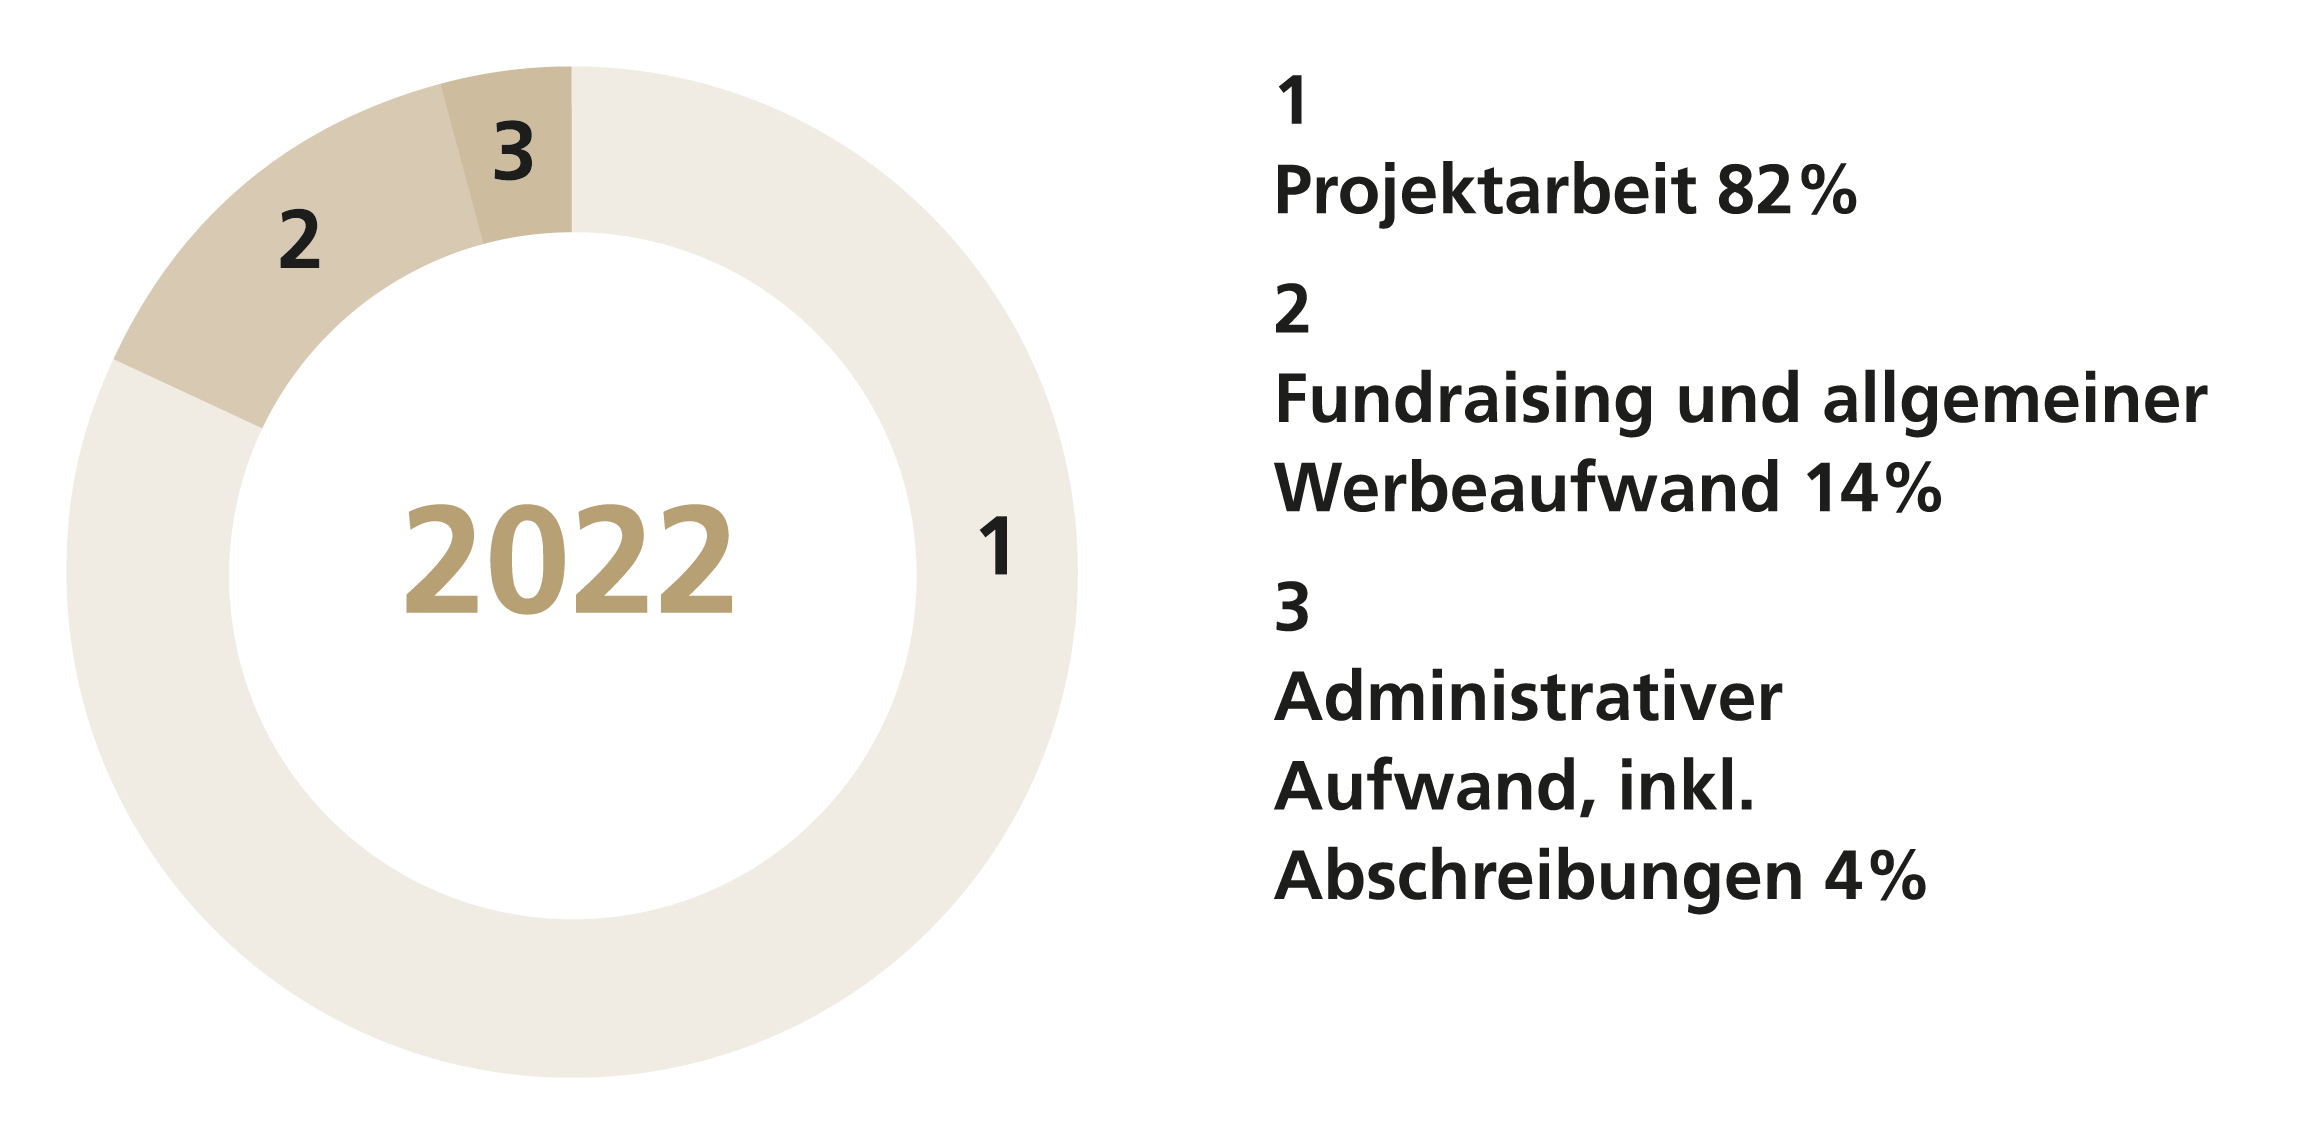 Die Grafik zeigt, wie viel Spendengelder der CBM Schweiz in die Projektarbeit fliessen: 82% Projektarbeit, 14% Fundraising und Werbeaufwand und 4% Administrativer Aufwand. 